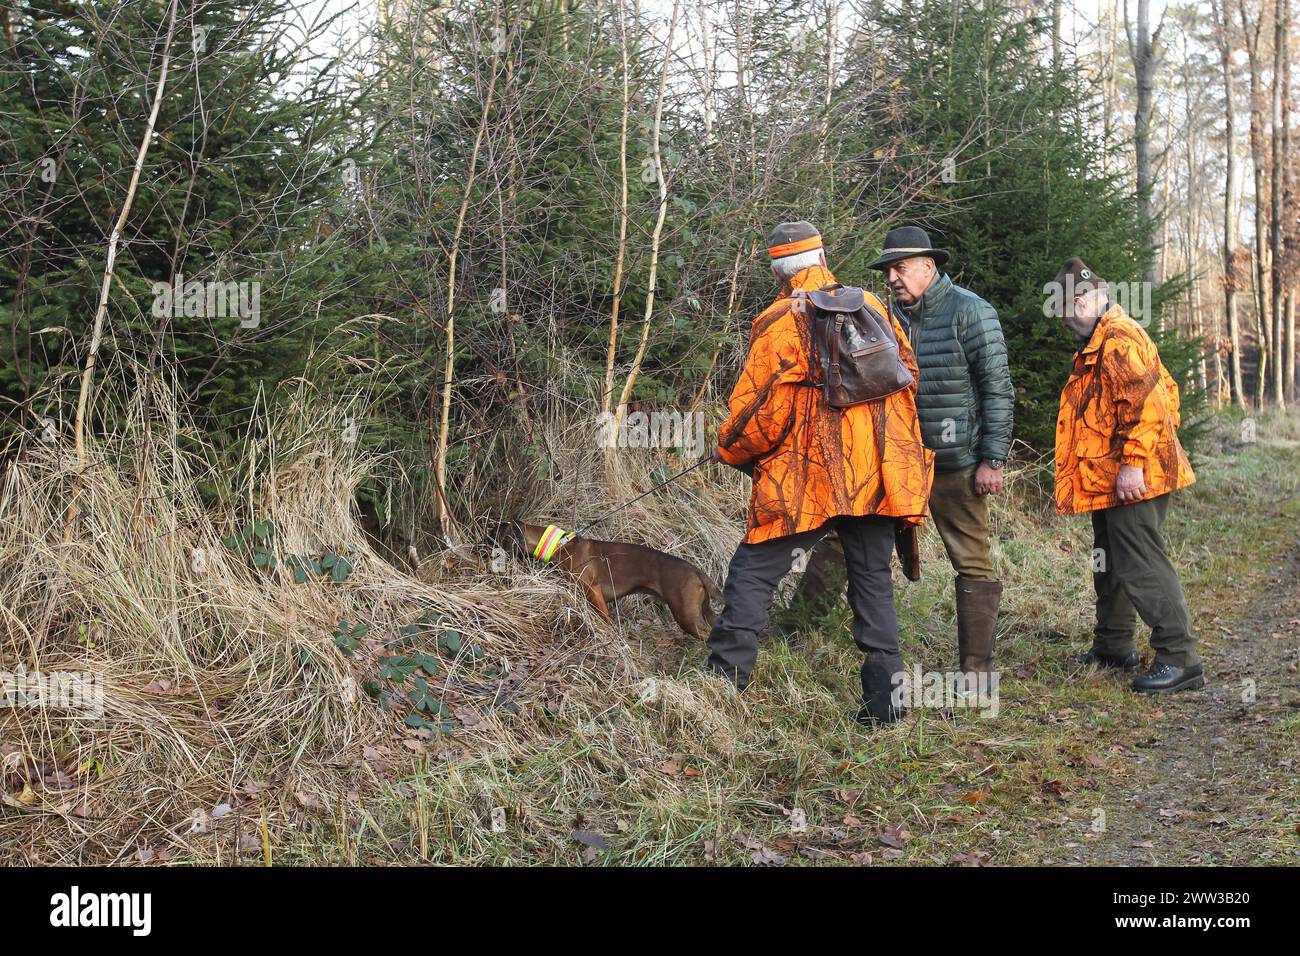 Wildschweinjagd, Reiseleiter in Sicherheitskleidung untersucht den Ort, an dem das Wildschwein (Sus scrofa) im Dickicht verschwand, Allgaeu, Bayern, Deutschland Stockfoto